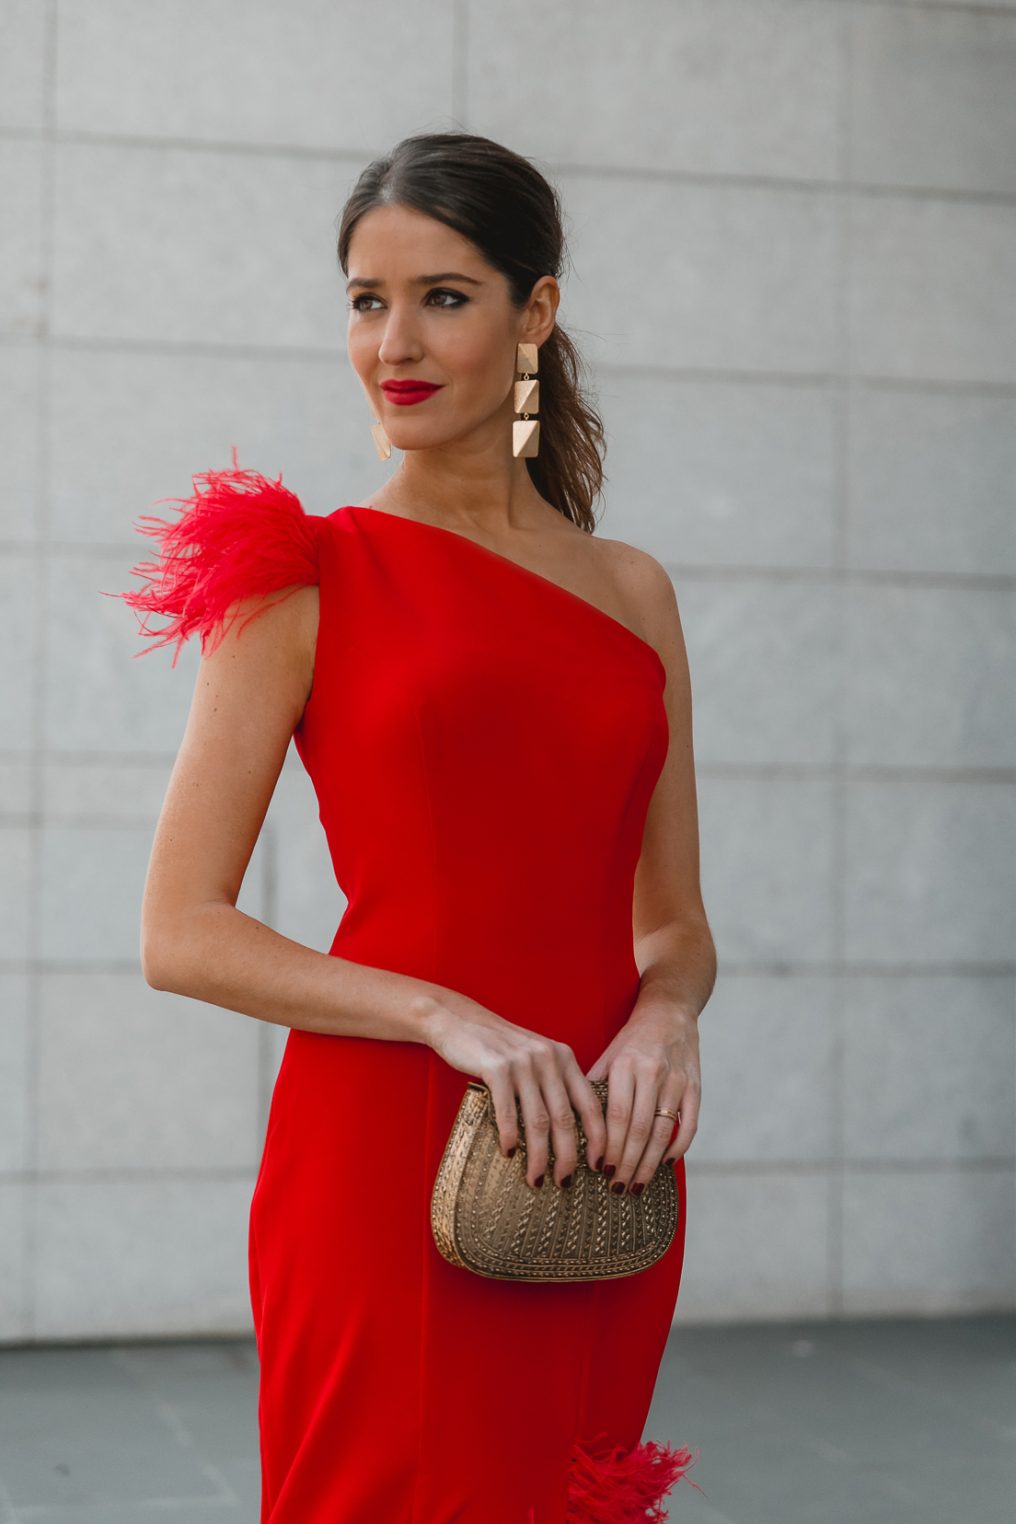 Look invitada de noche: el vestido rojo de plumas | Invitada Perfecta